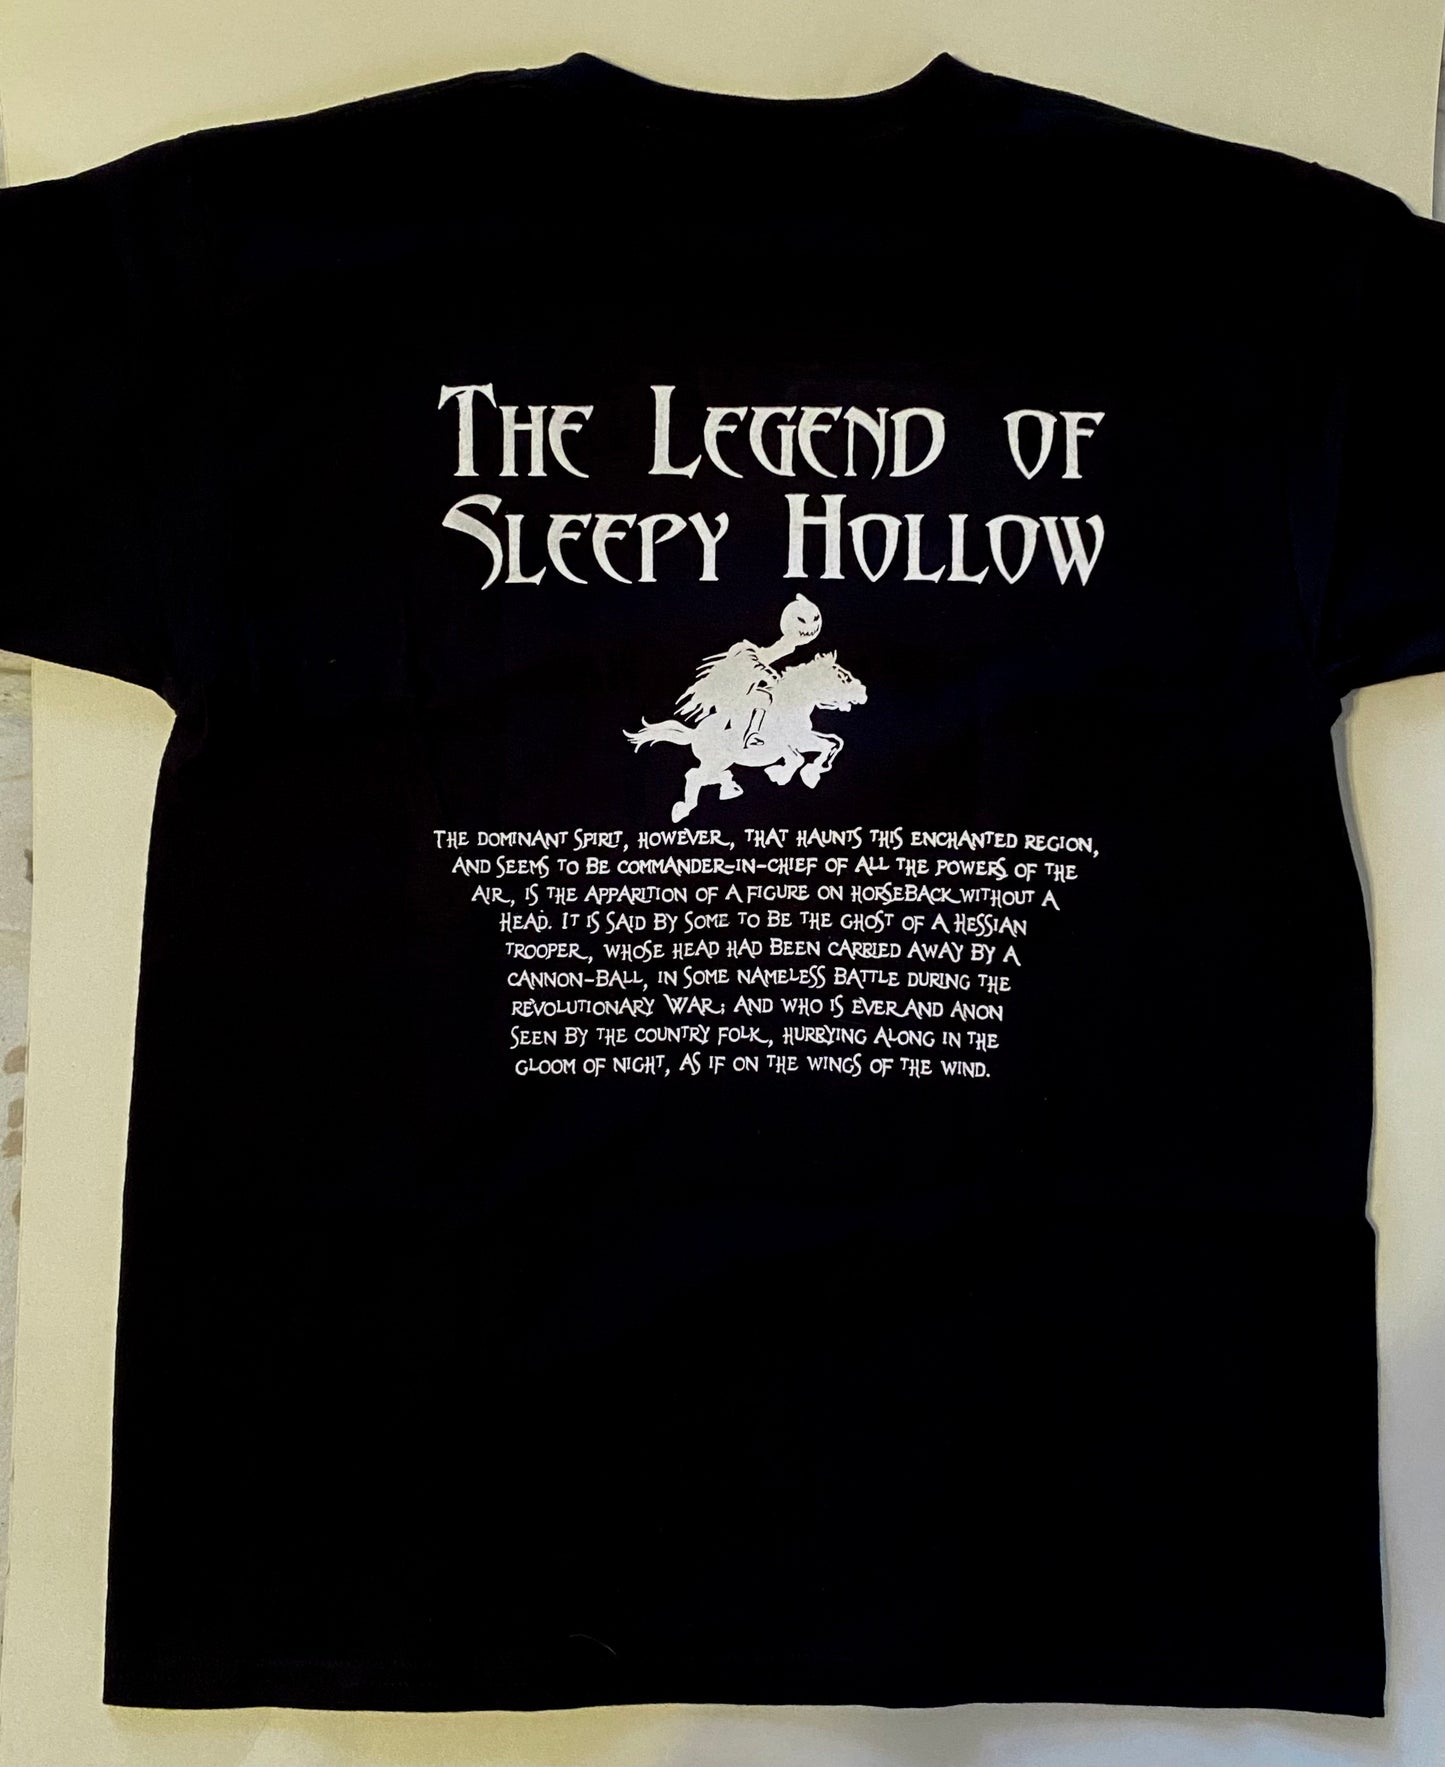 The Legend of Sleepy Hollow T-Shirt